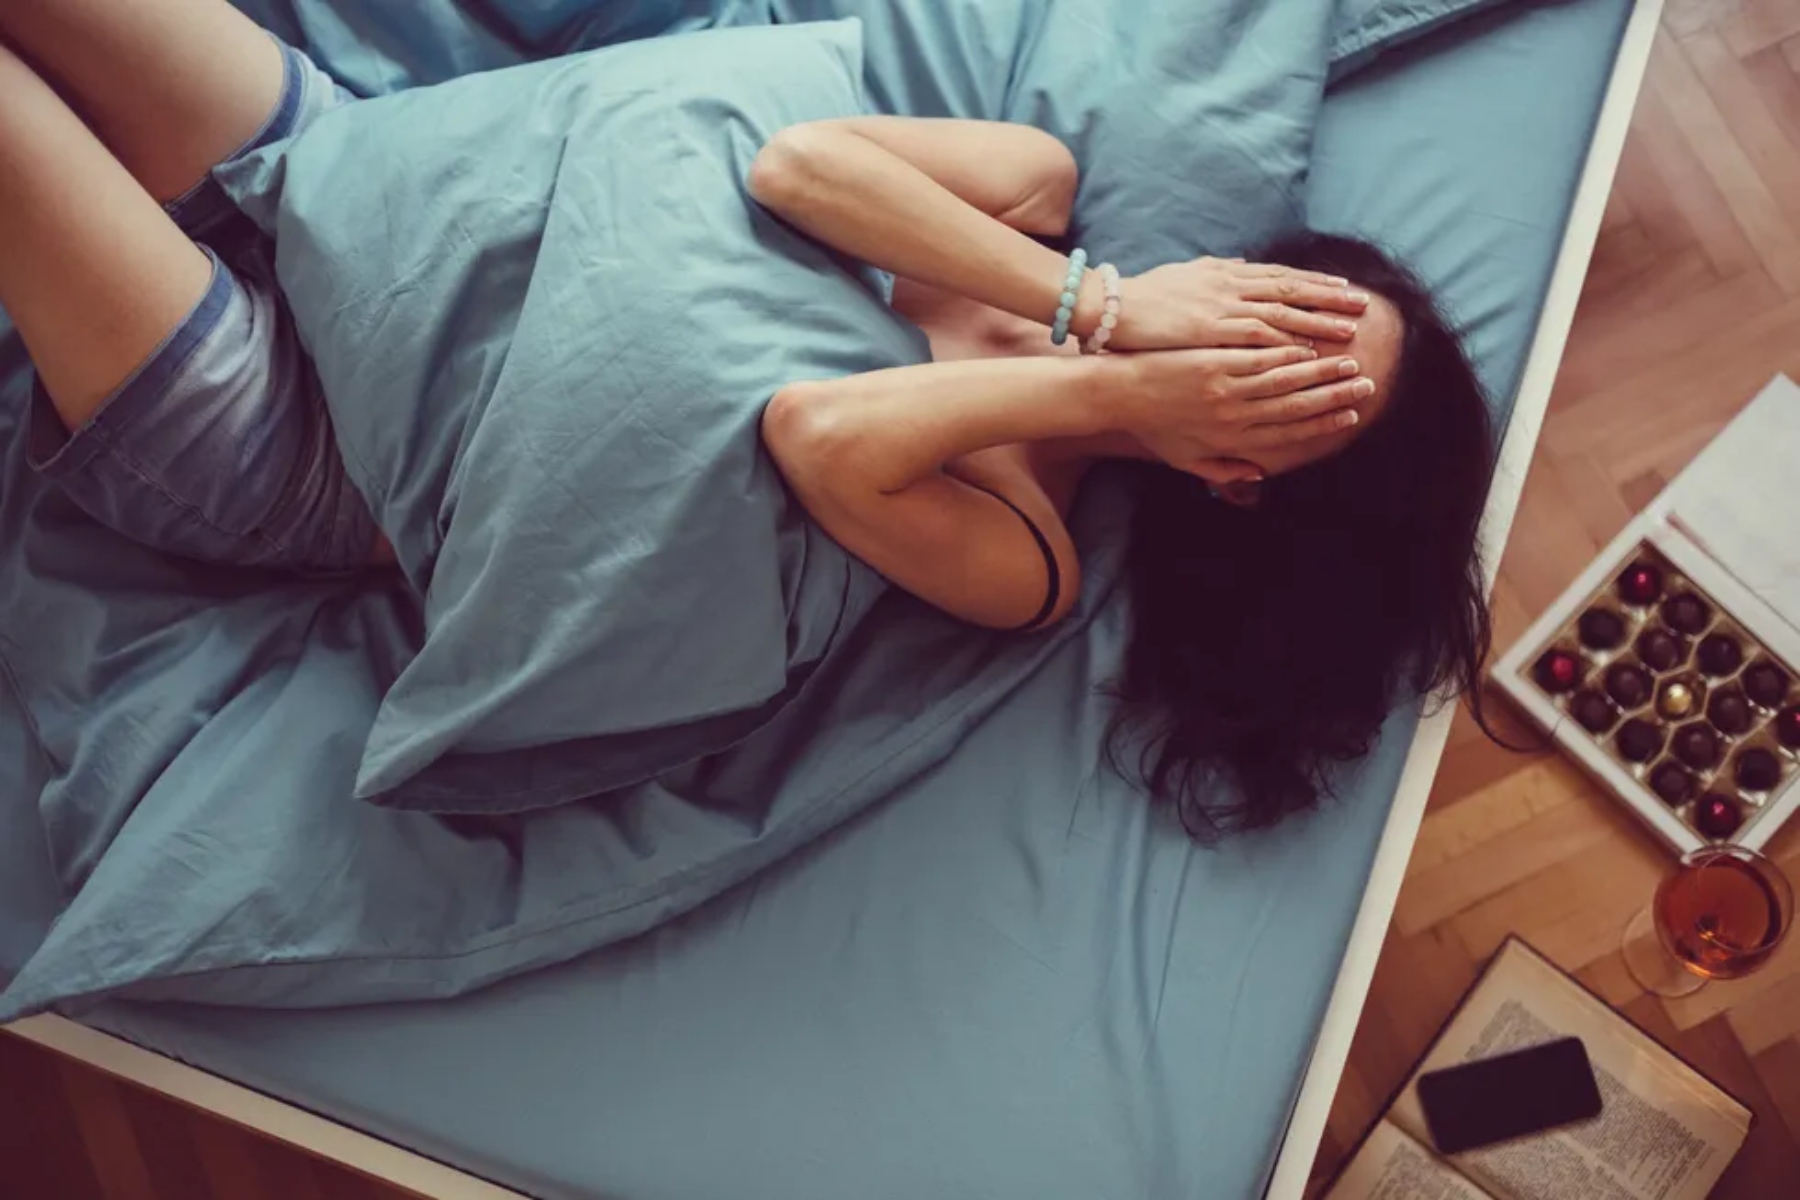 Σεξ συνήθειες: 5 πράγματα που κάνετε και καταστρέφουν τη σεξουαλική σας ζωή